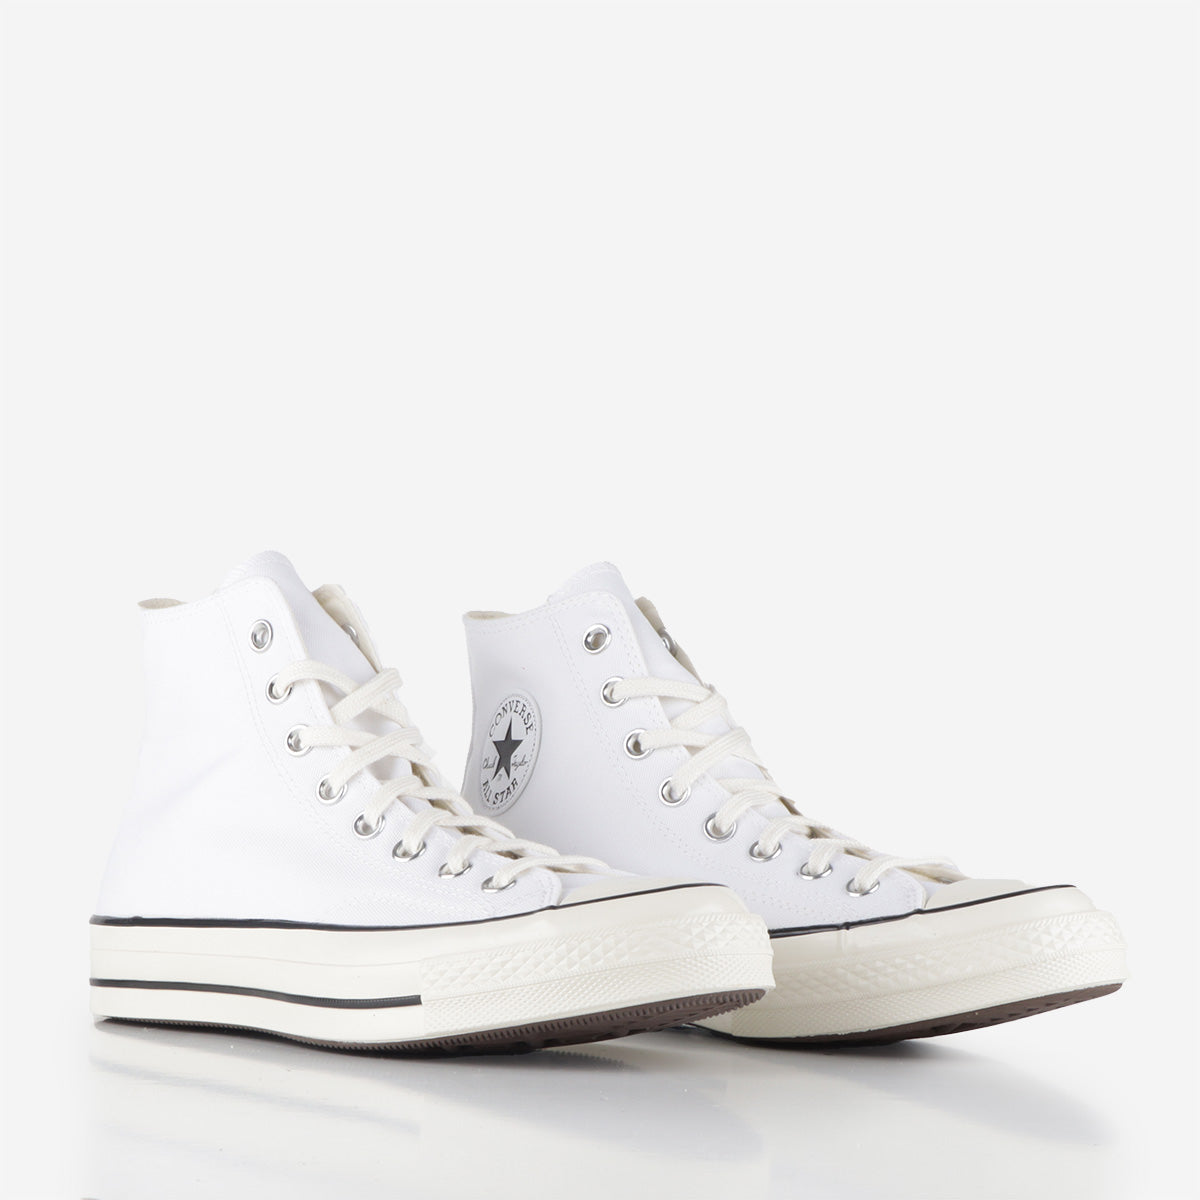 Converse Chuck Taylor 70 'Vintage Canvas' Hi Shoes - White/Black/Egret ...